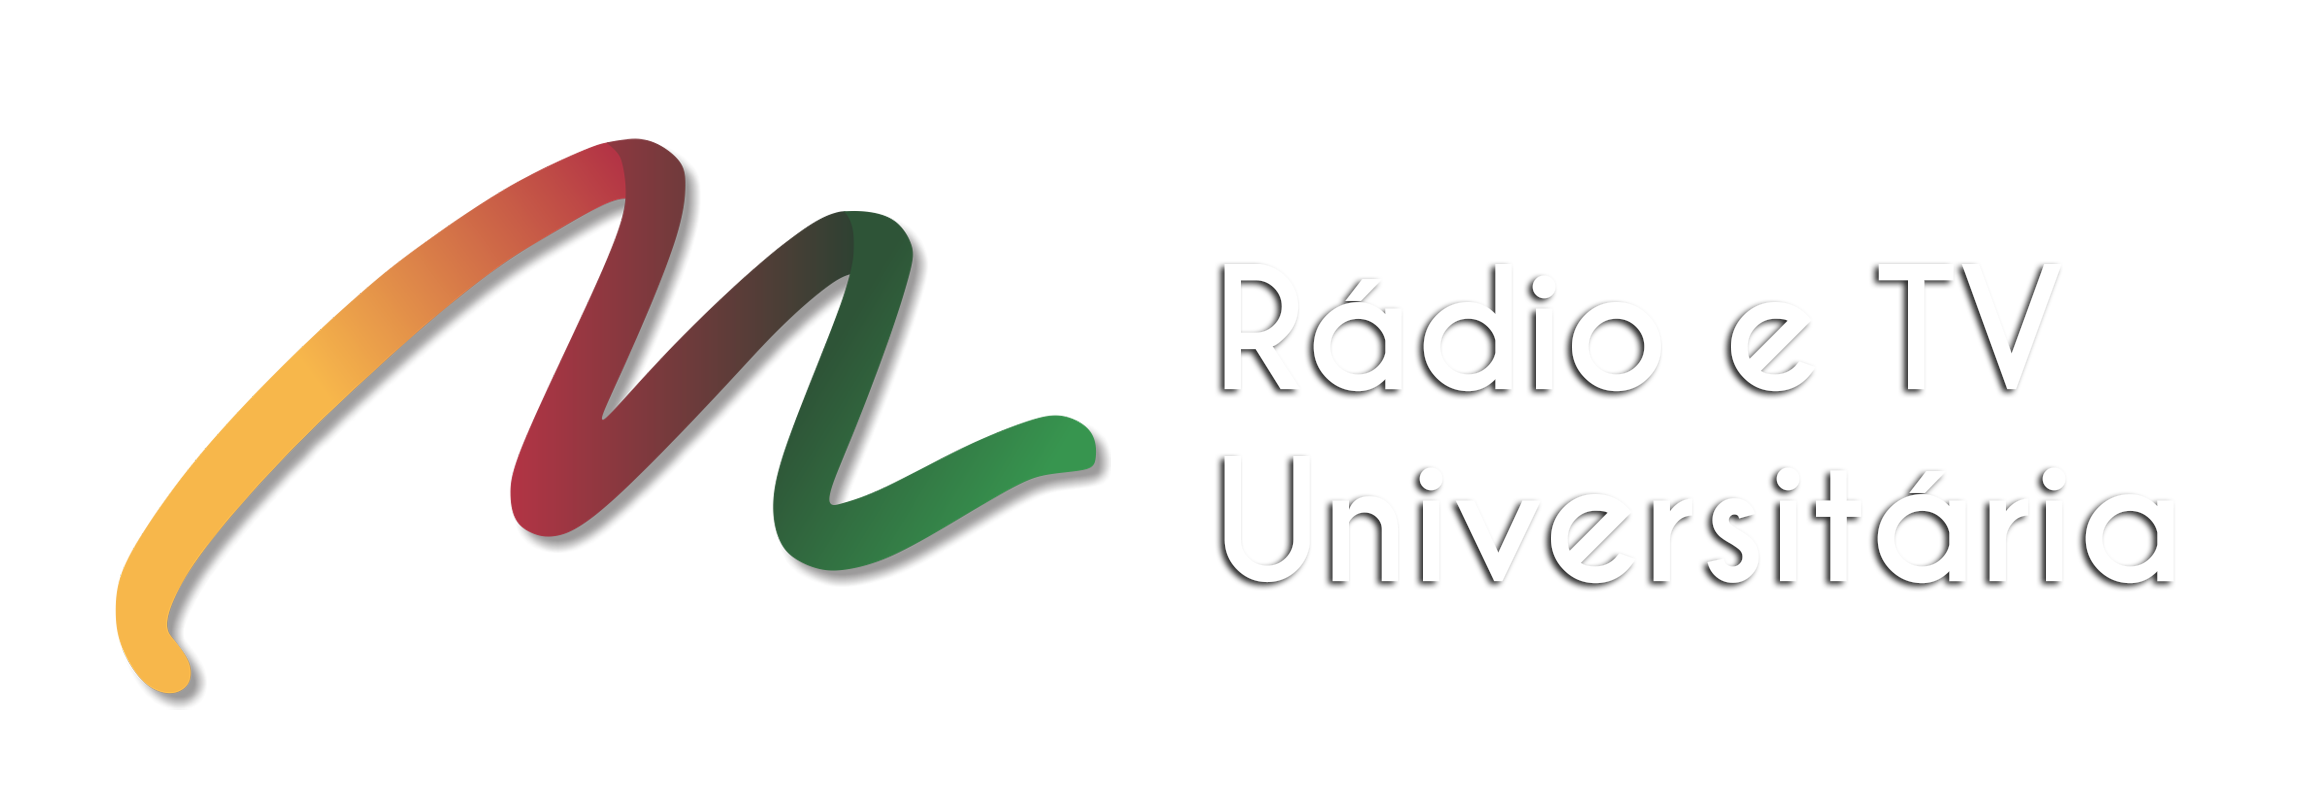 paratletismo – Rádio e TV Unifap 96.9 FM – Canal 1